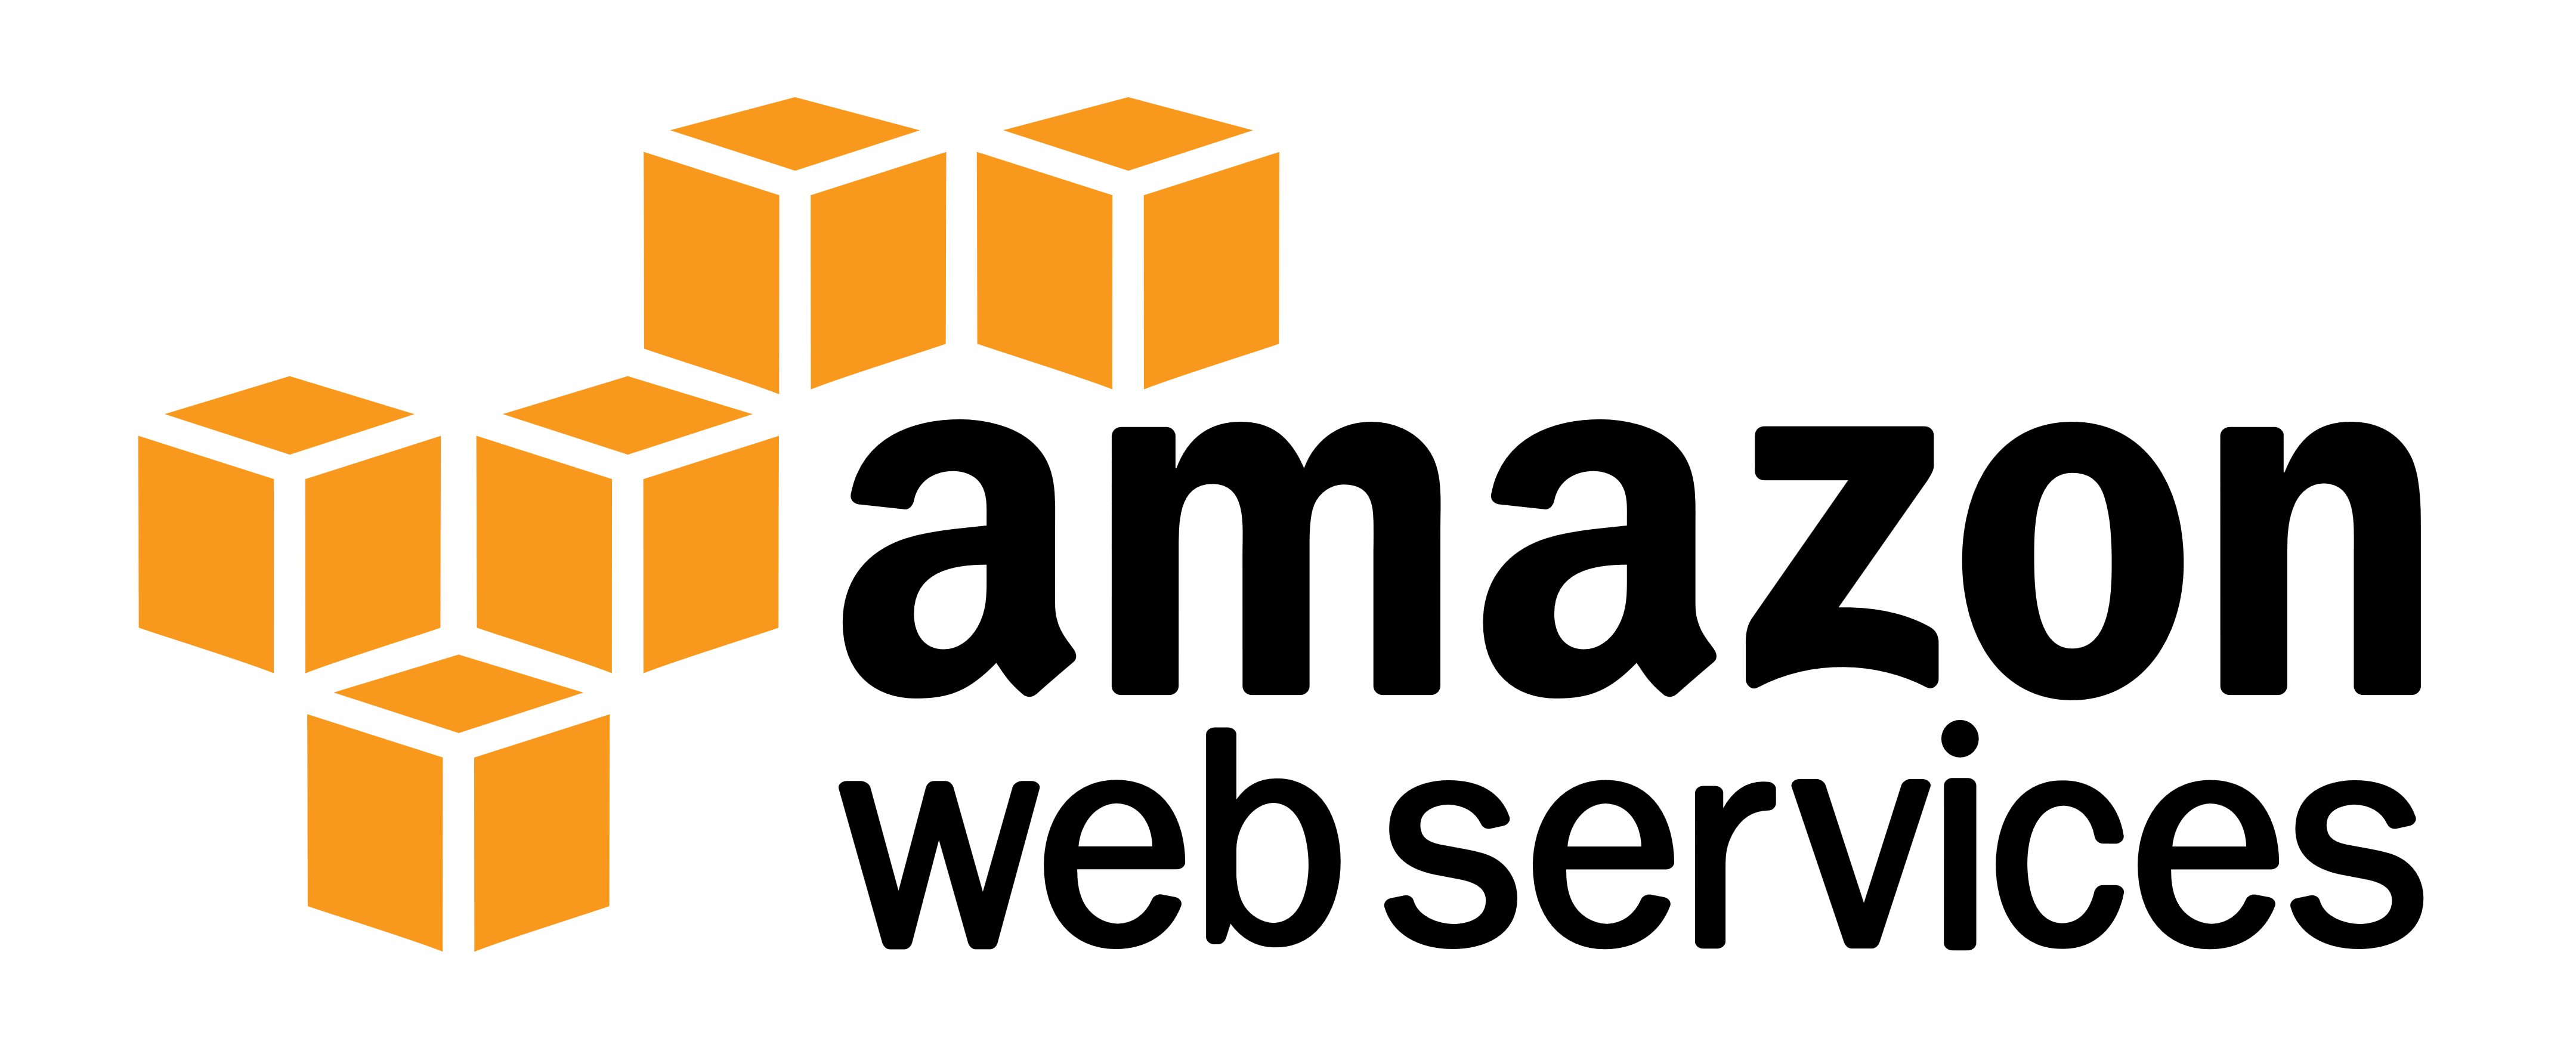 AWS, Amazon Web Services logo, logotype